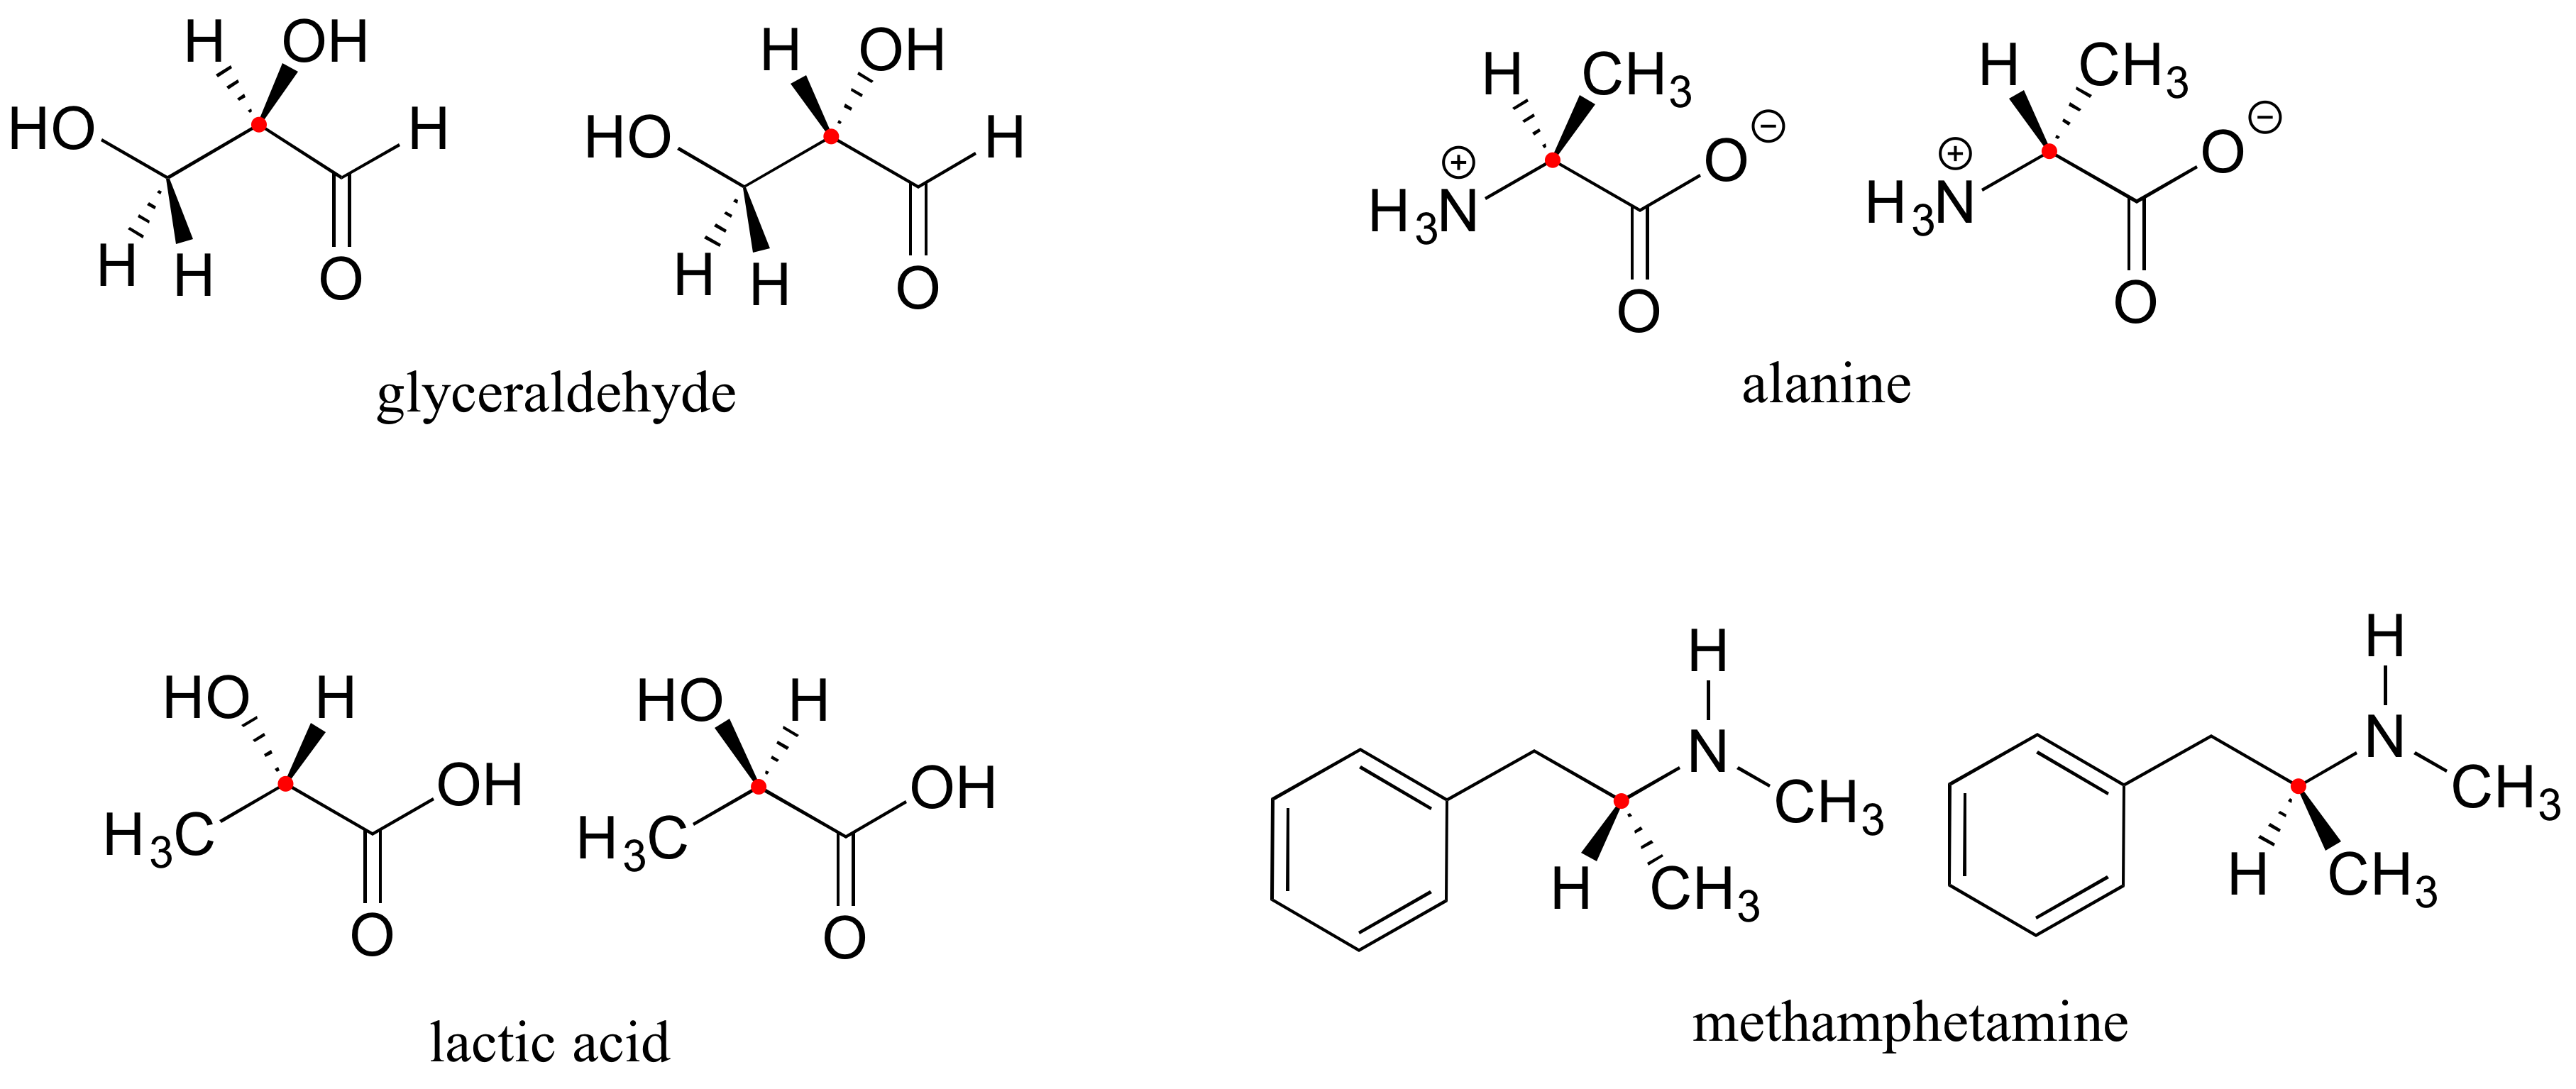 Enantiómeros de gliceraldehído, alanina, ácido láctico y metanfetamina.